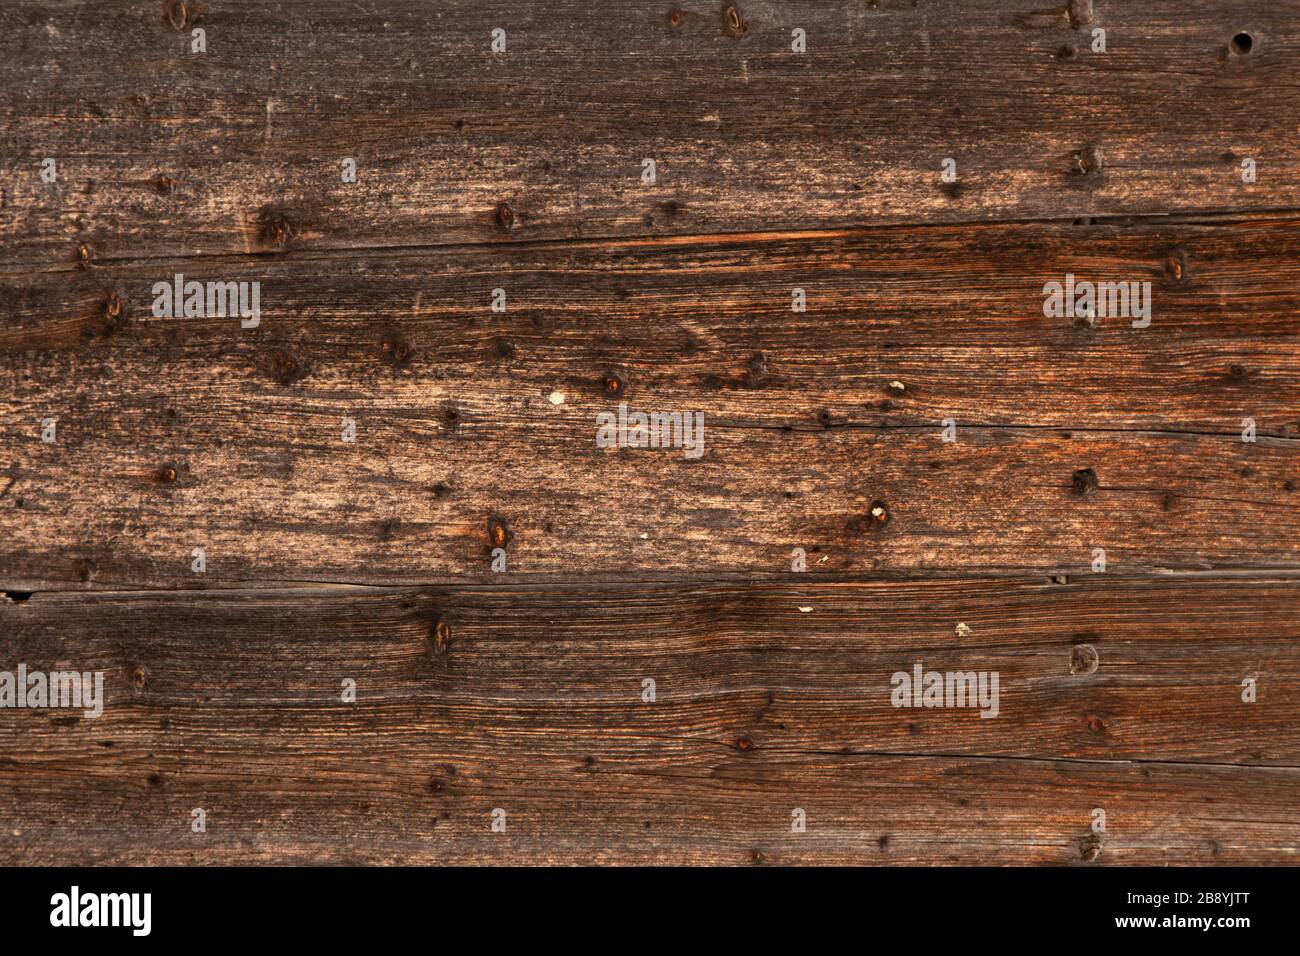 Dark wooden background Stock Photo